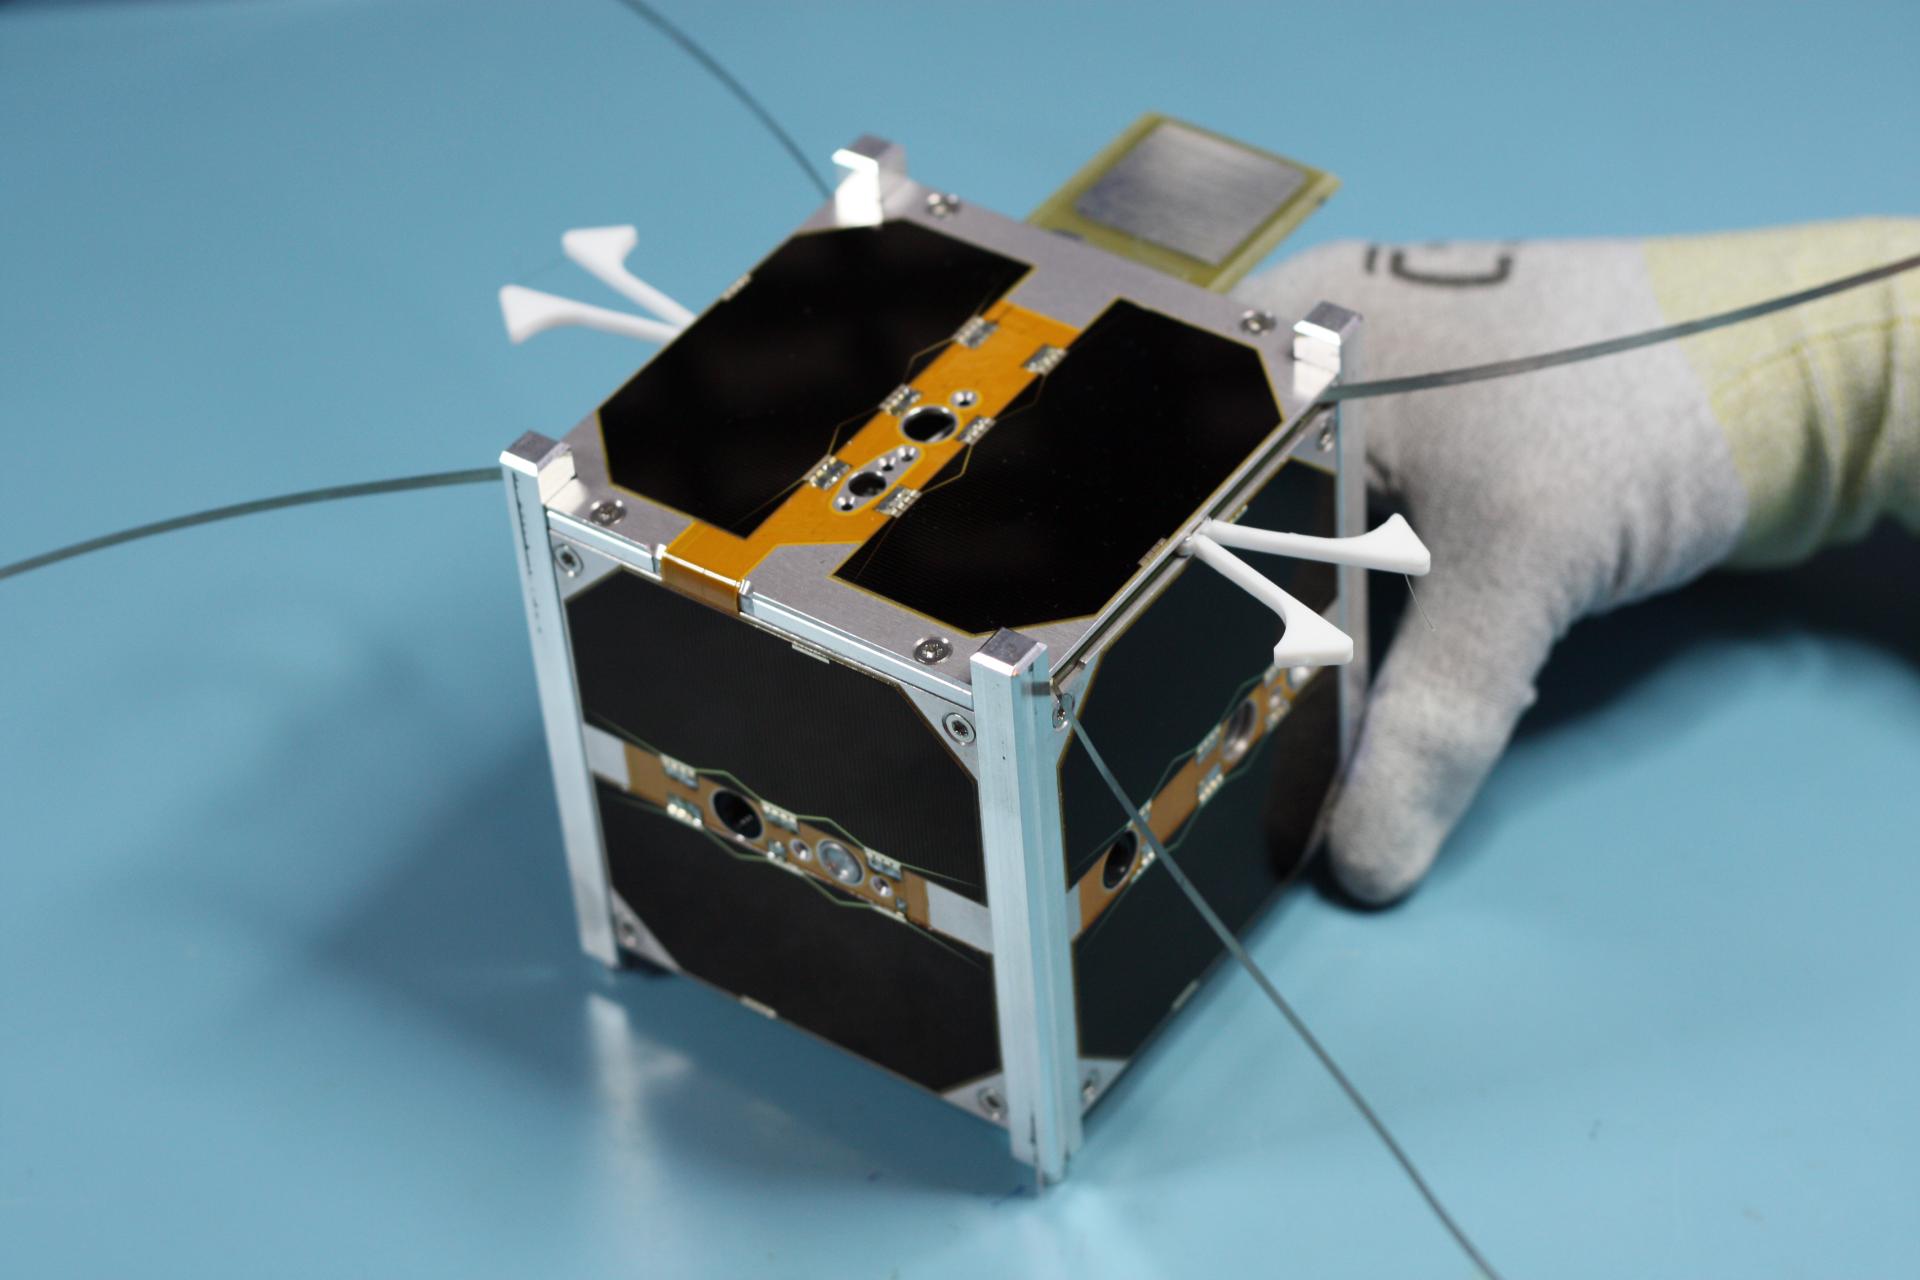 Prvá slovenská družica skCUBE, ktorú pred viac ako rokom vyslali do vesmíru.